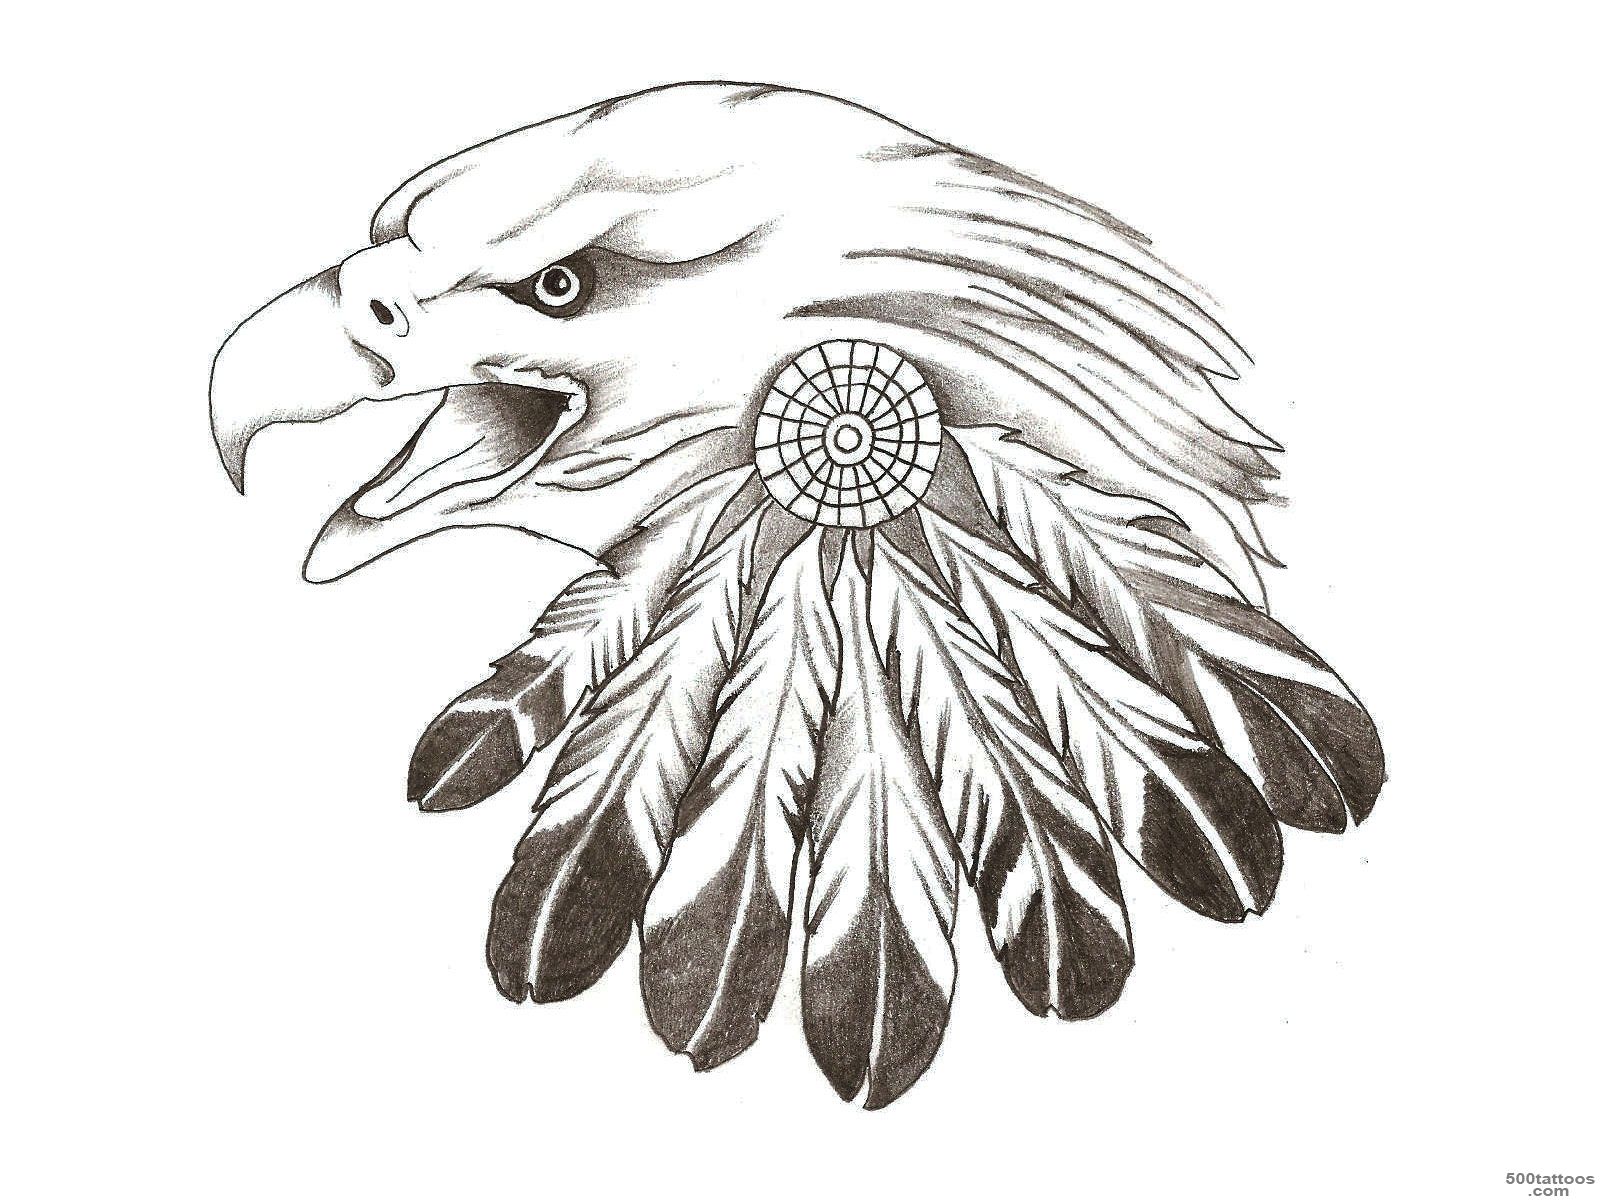 Indian Eagle Tattoo Designs   Tattoes Idea 2015  2016_50